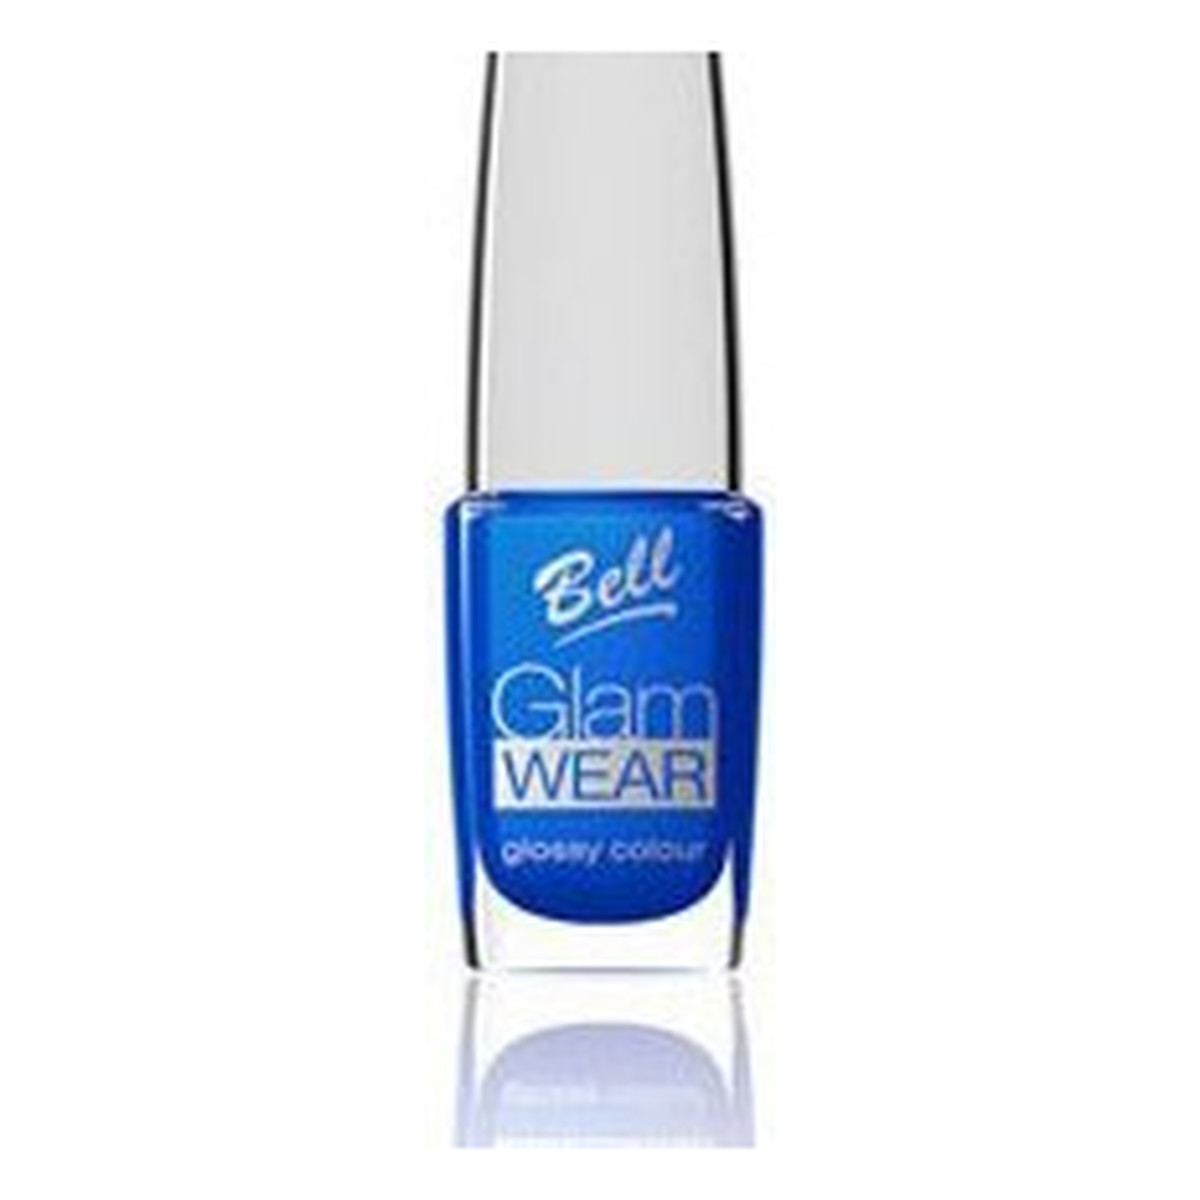 Bell Glam Wear Glossy Colour Superkryjący Lakier Do Paznokci z Połyskiem (411) 12ml